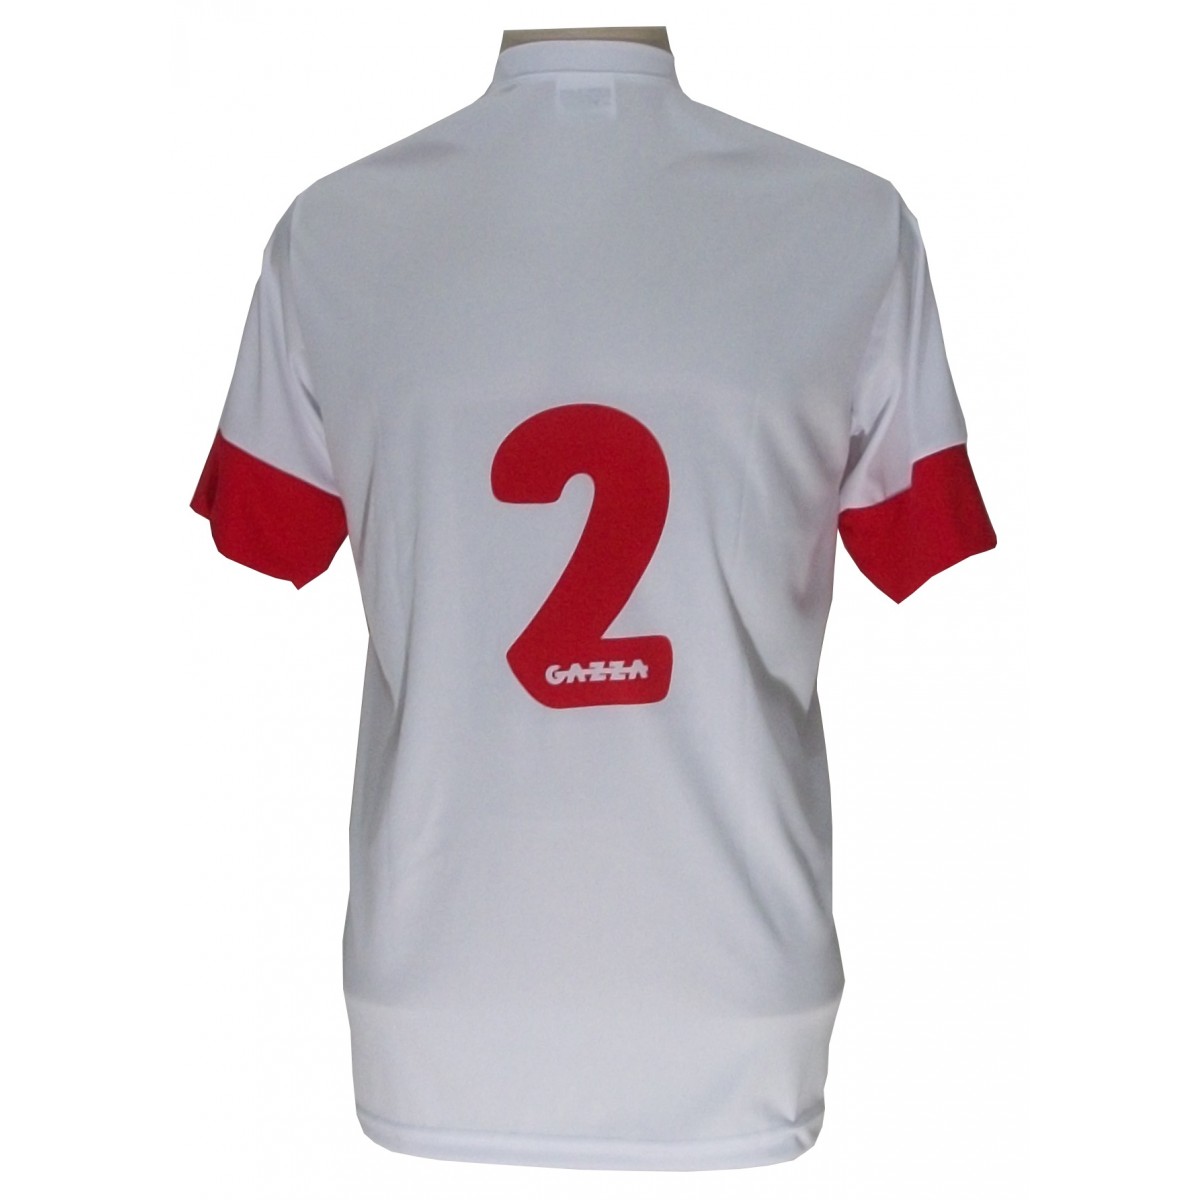 Uniforme Esportivo com 14 camisas modelo Sporting Branco/Vermelho + 14 calções modelo Madrid Branco + Brindes